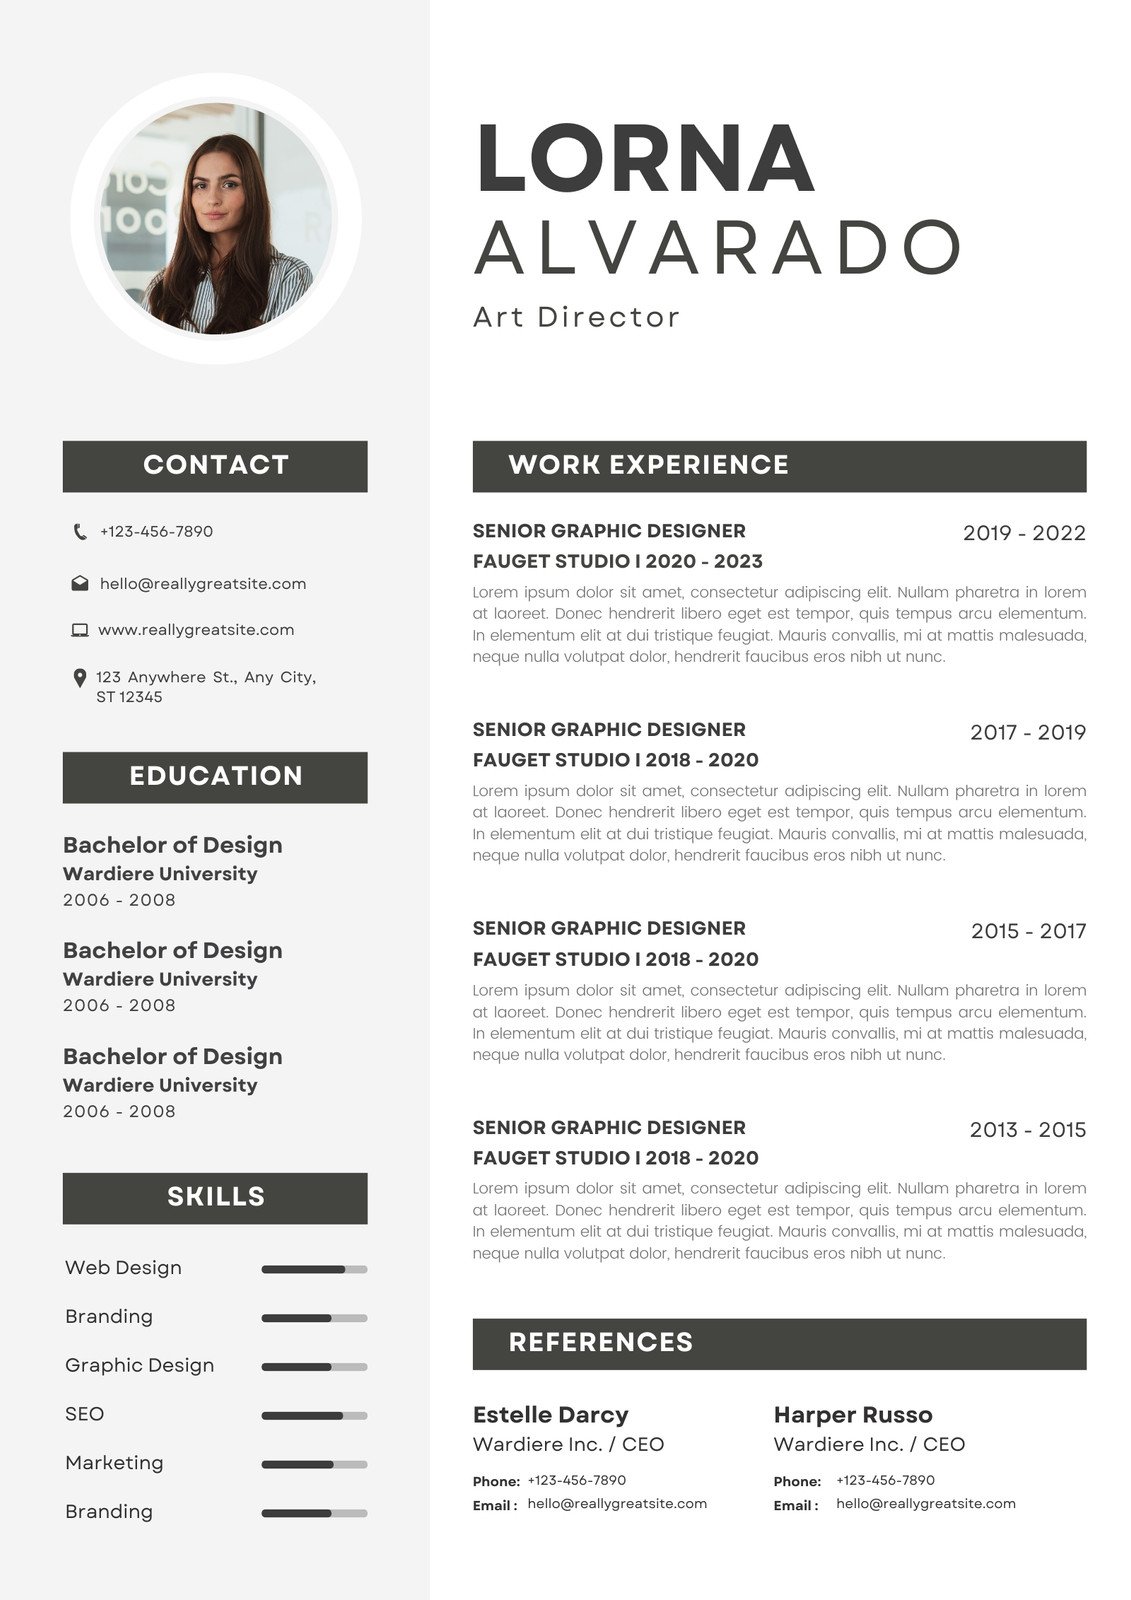 Minimalist CV Resume